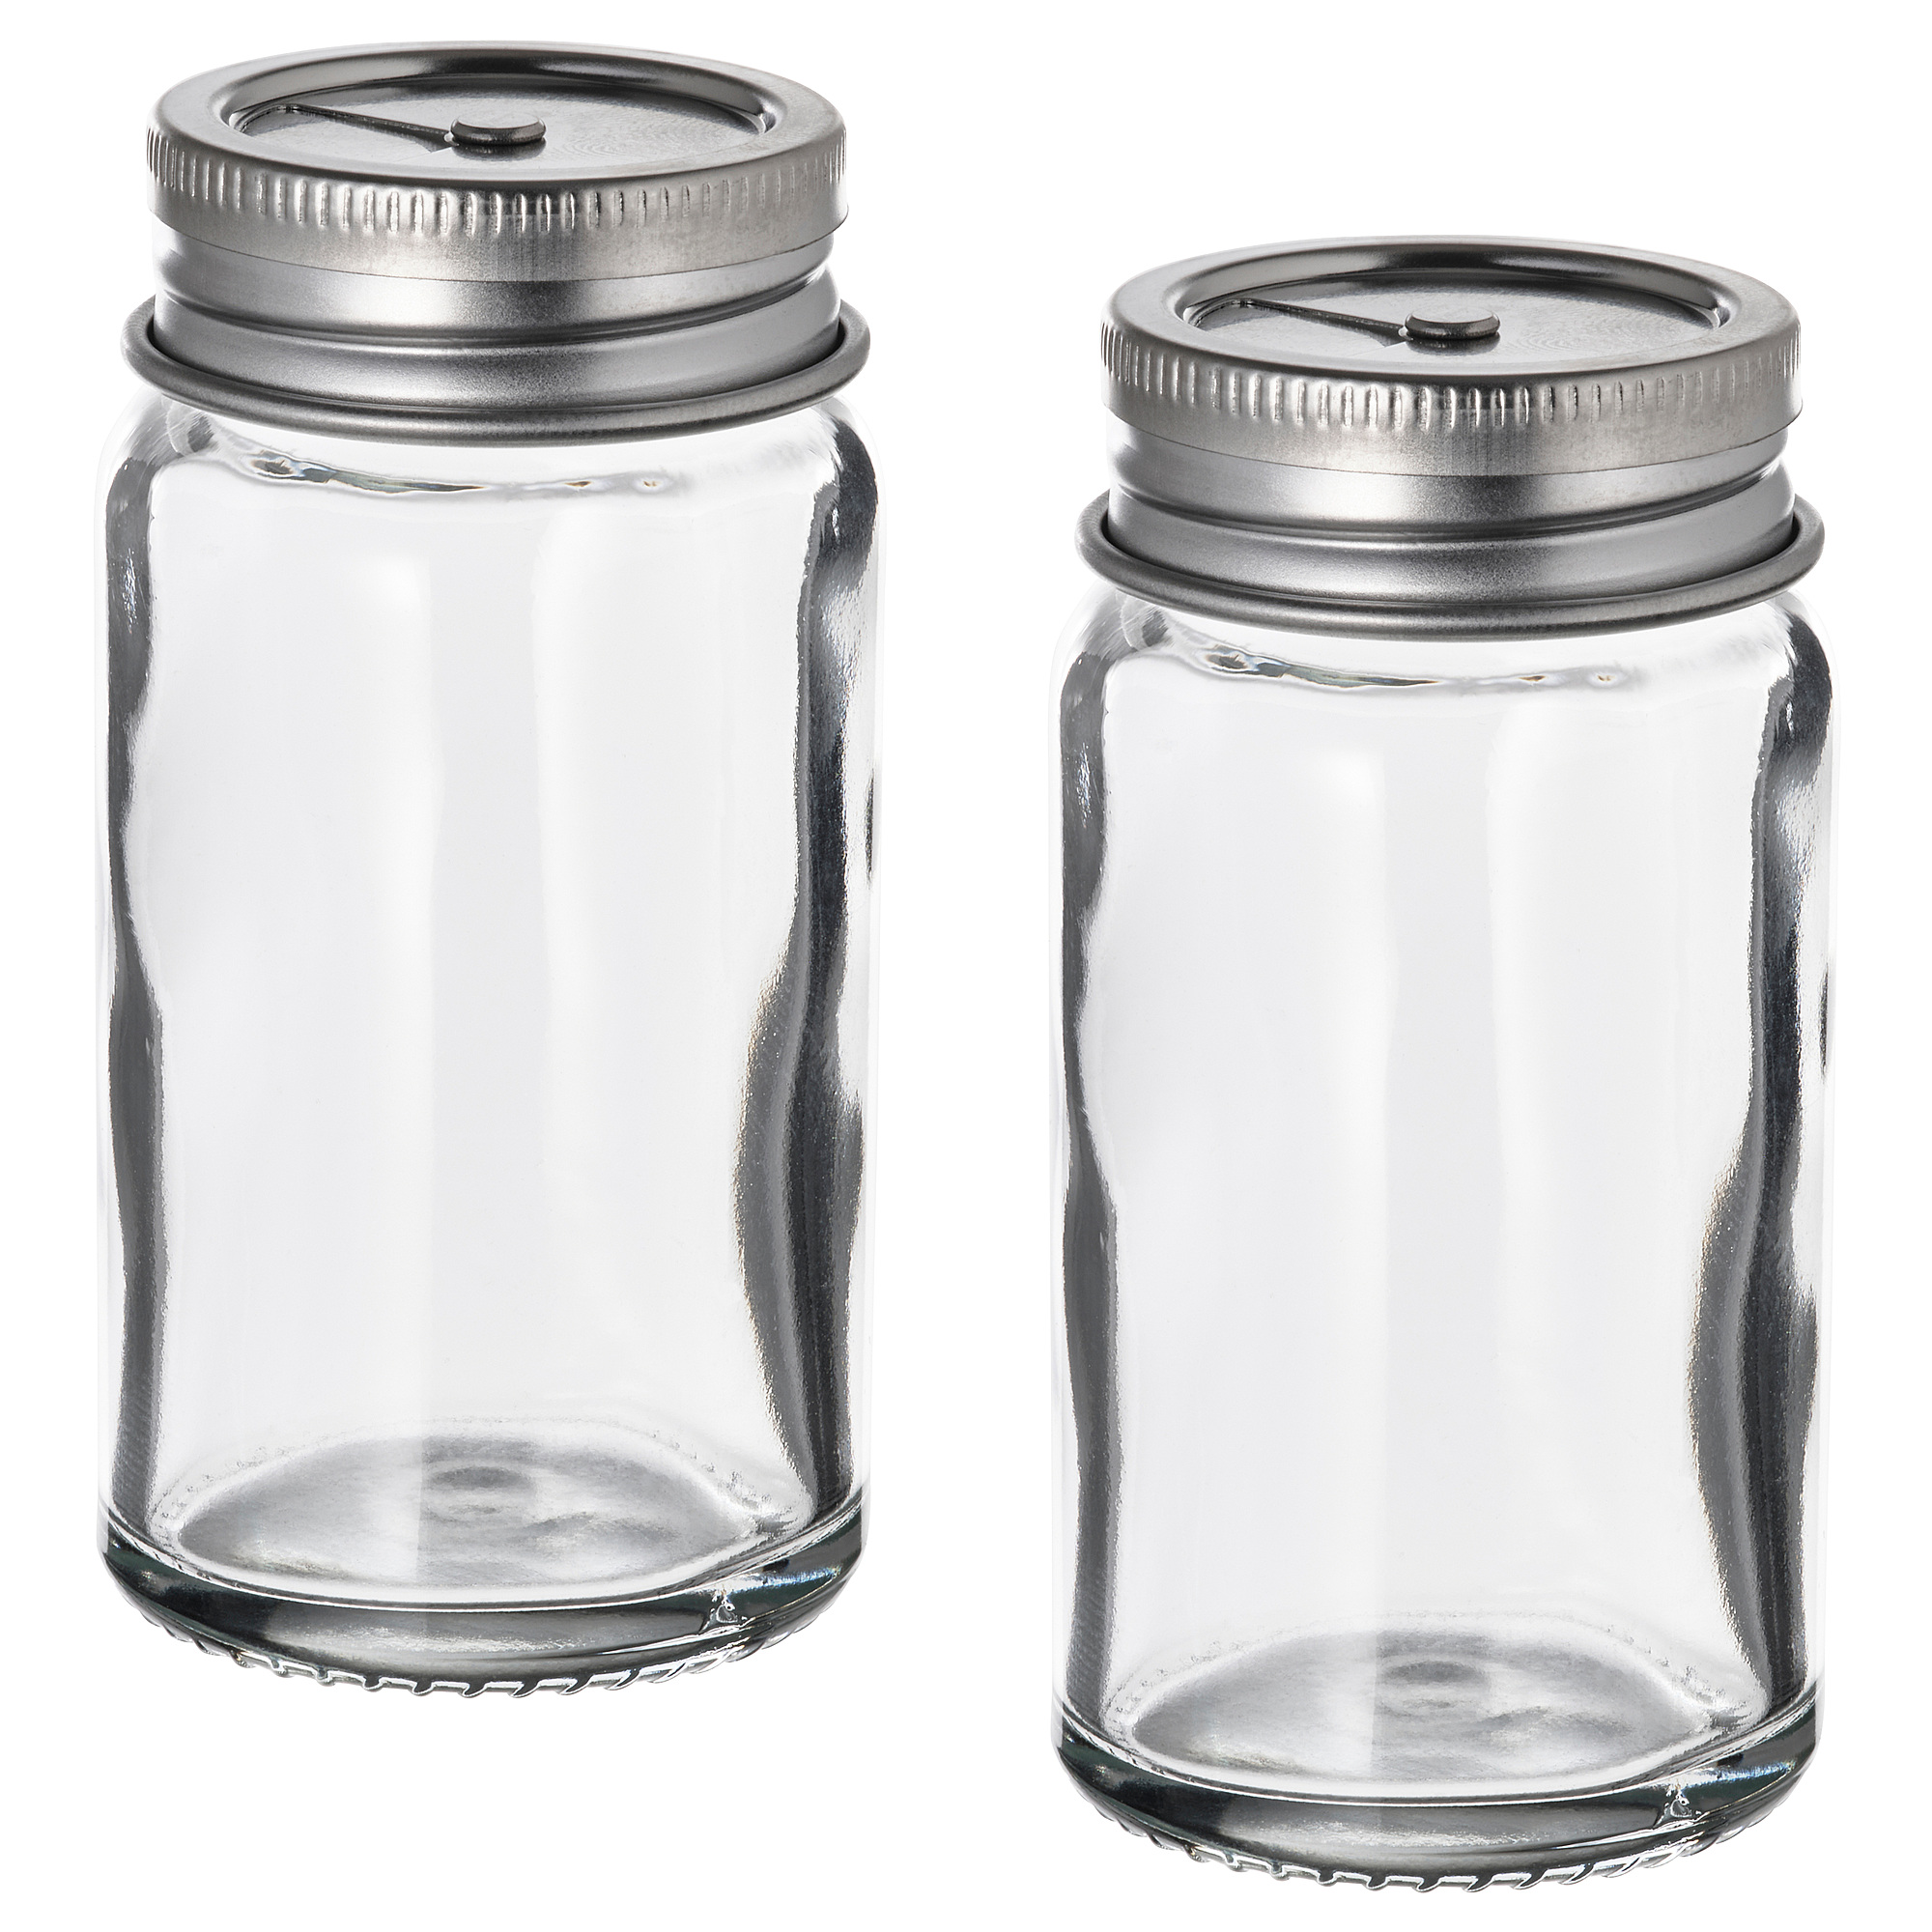 CITRONHAJ salt and pepper shakers